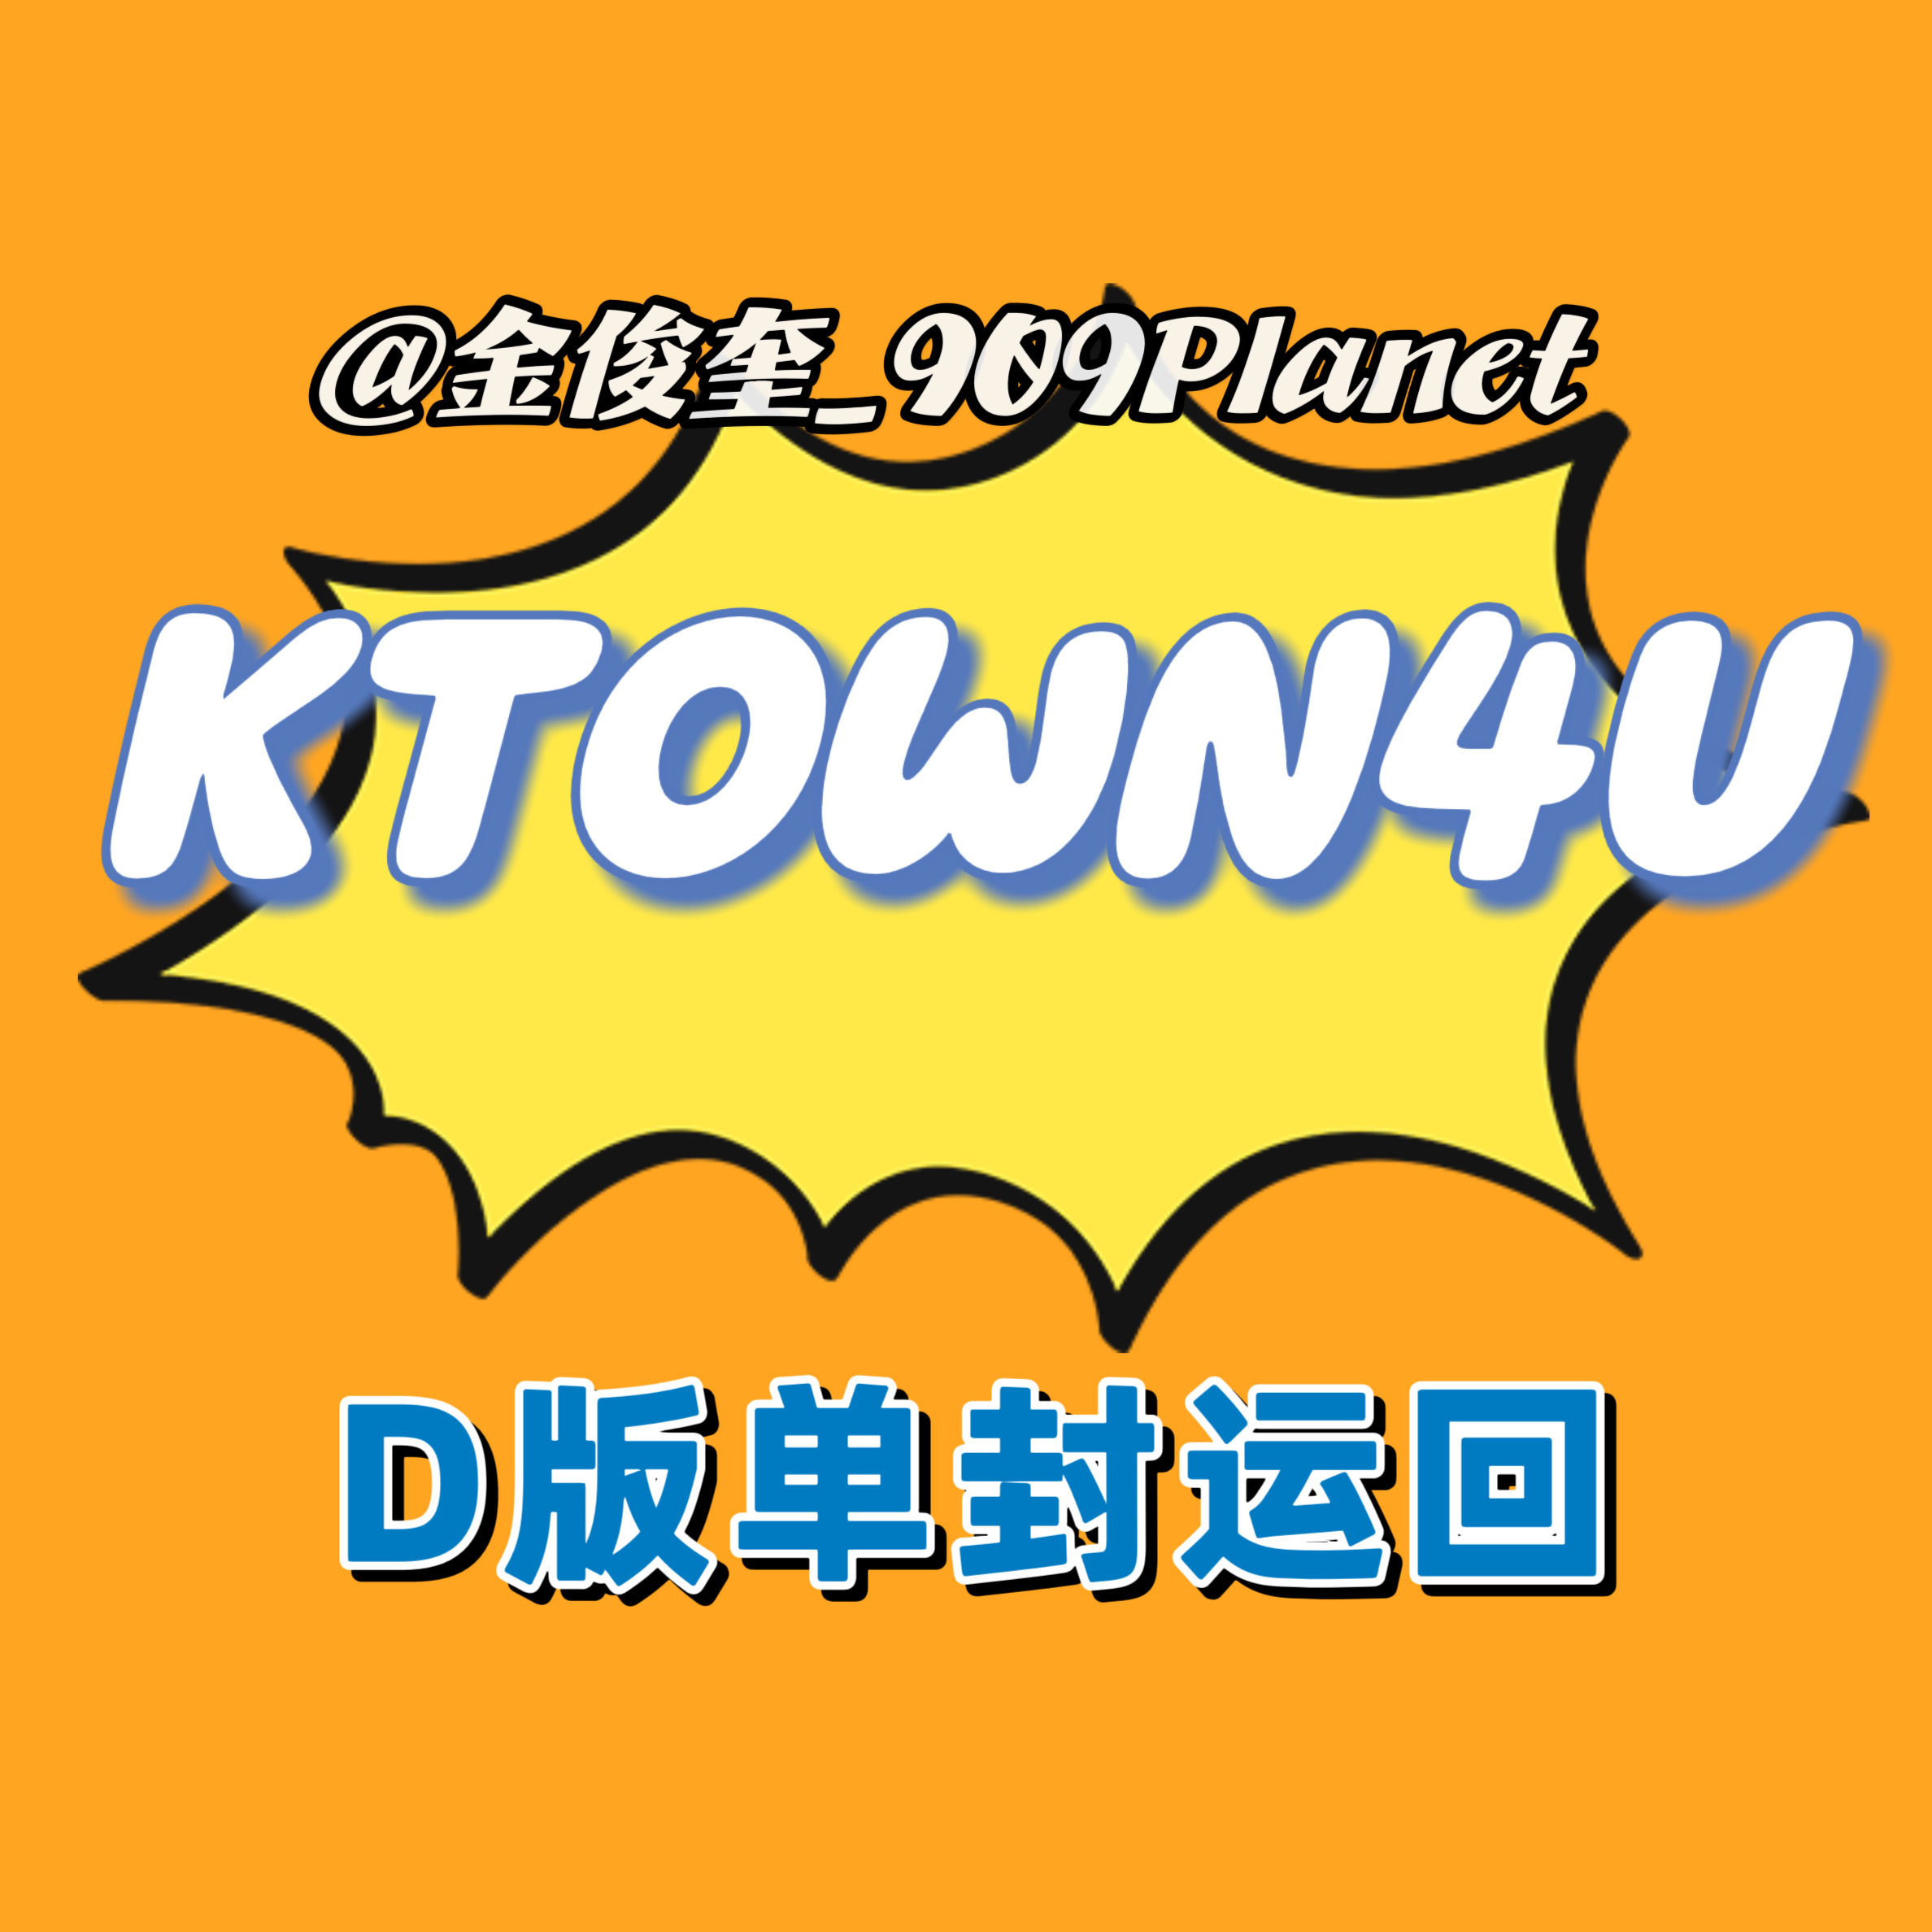 [全款 裸专] [Ktown4u Special Gift] TREASURE - 2ND FULL ALBUM [REBOOT] DIGIPACK VER._金俊奎909Planet